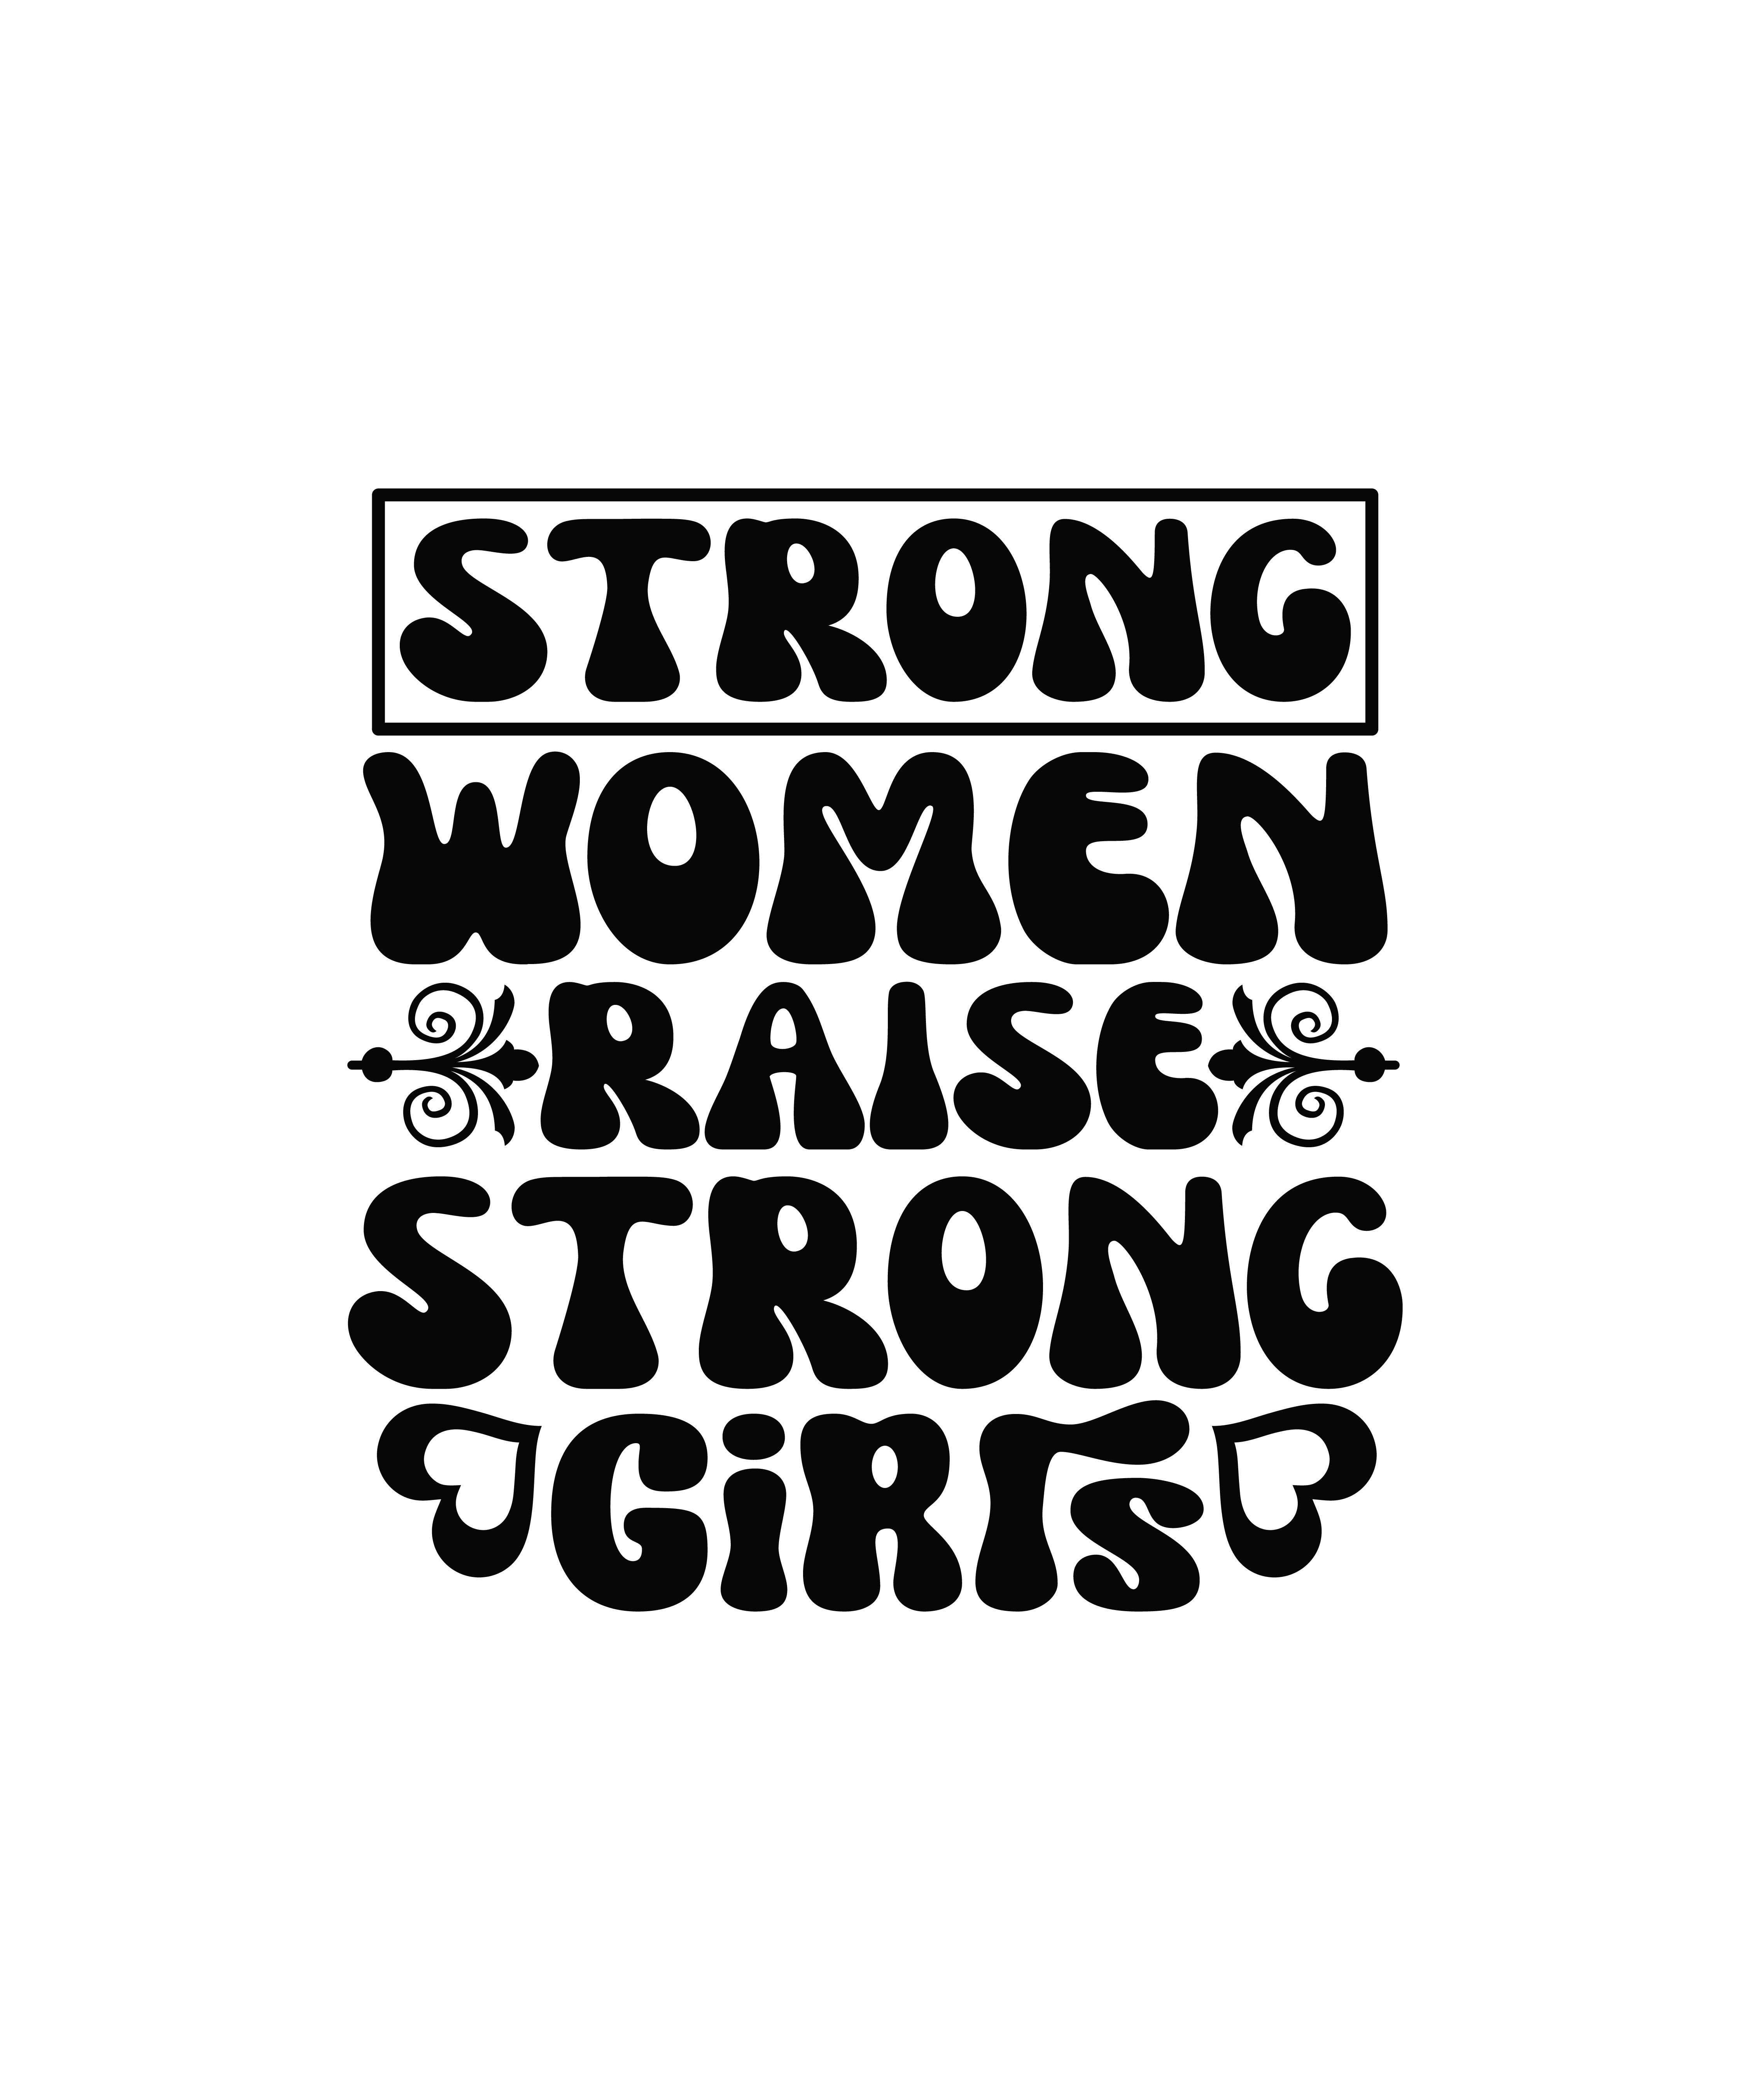 strong women raise strong girls 01 751